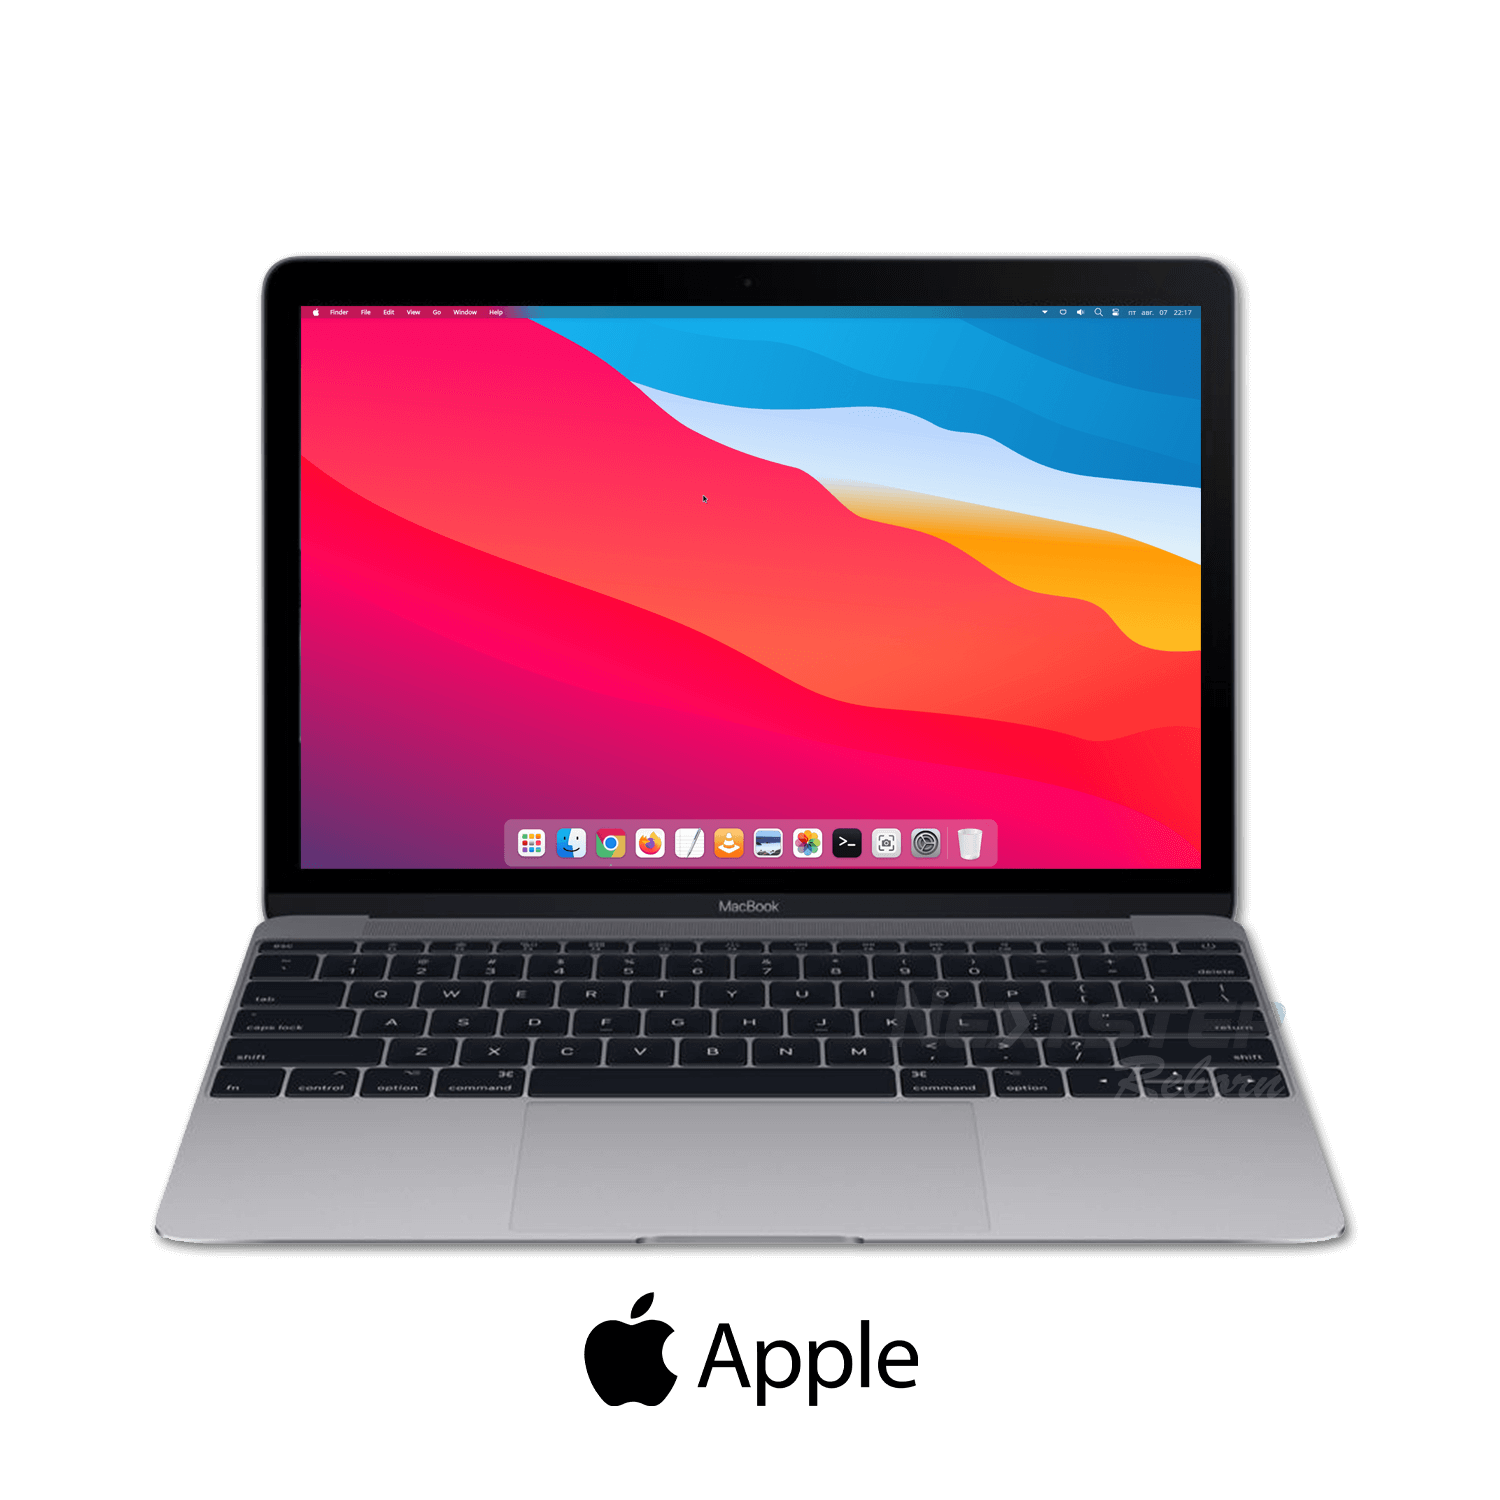 คอมมือสอง) Apple MacBook Retina 12 2017 Core I7 Turbo 3.6GHz Ram